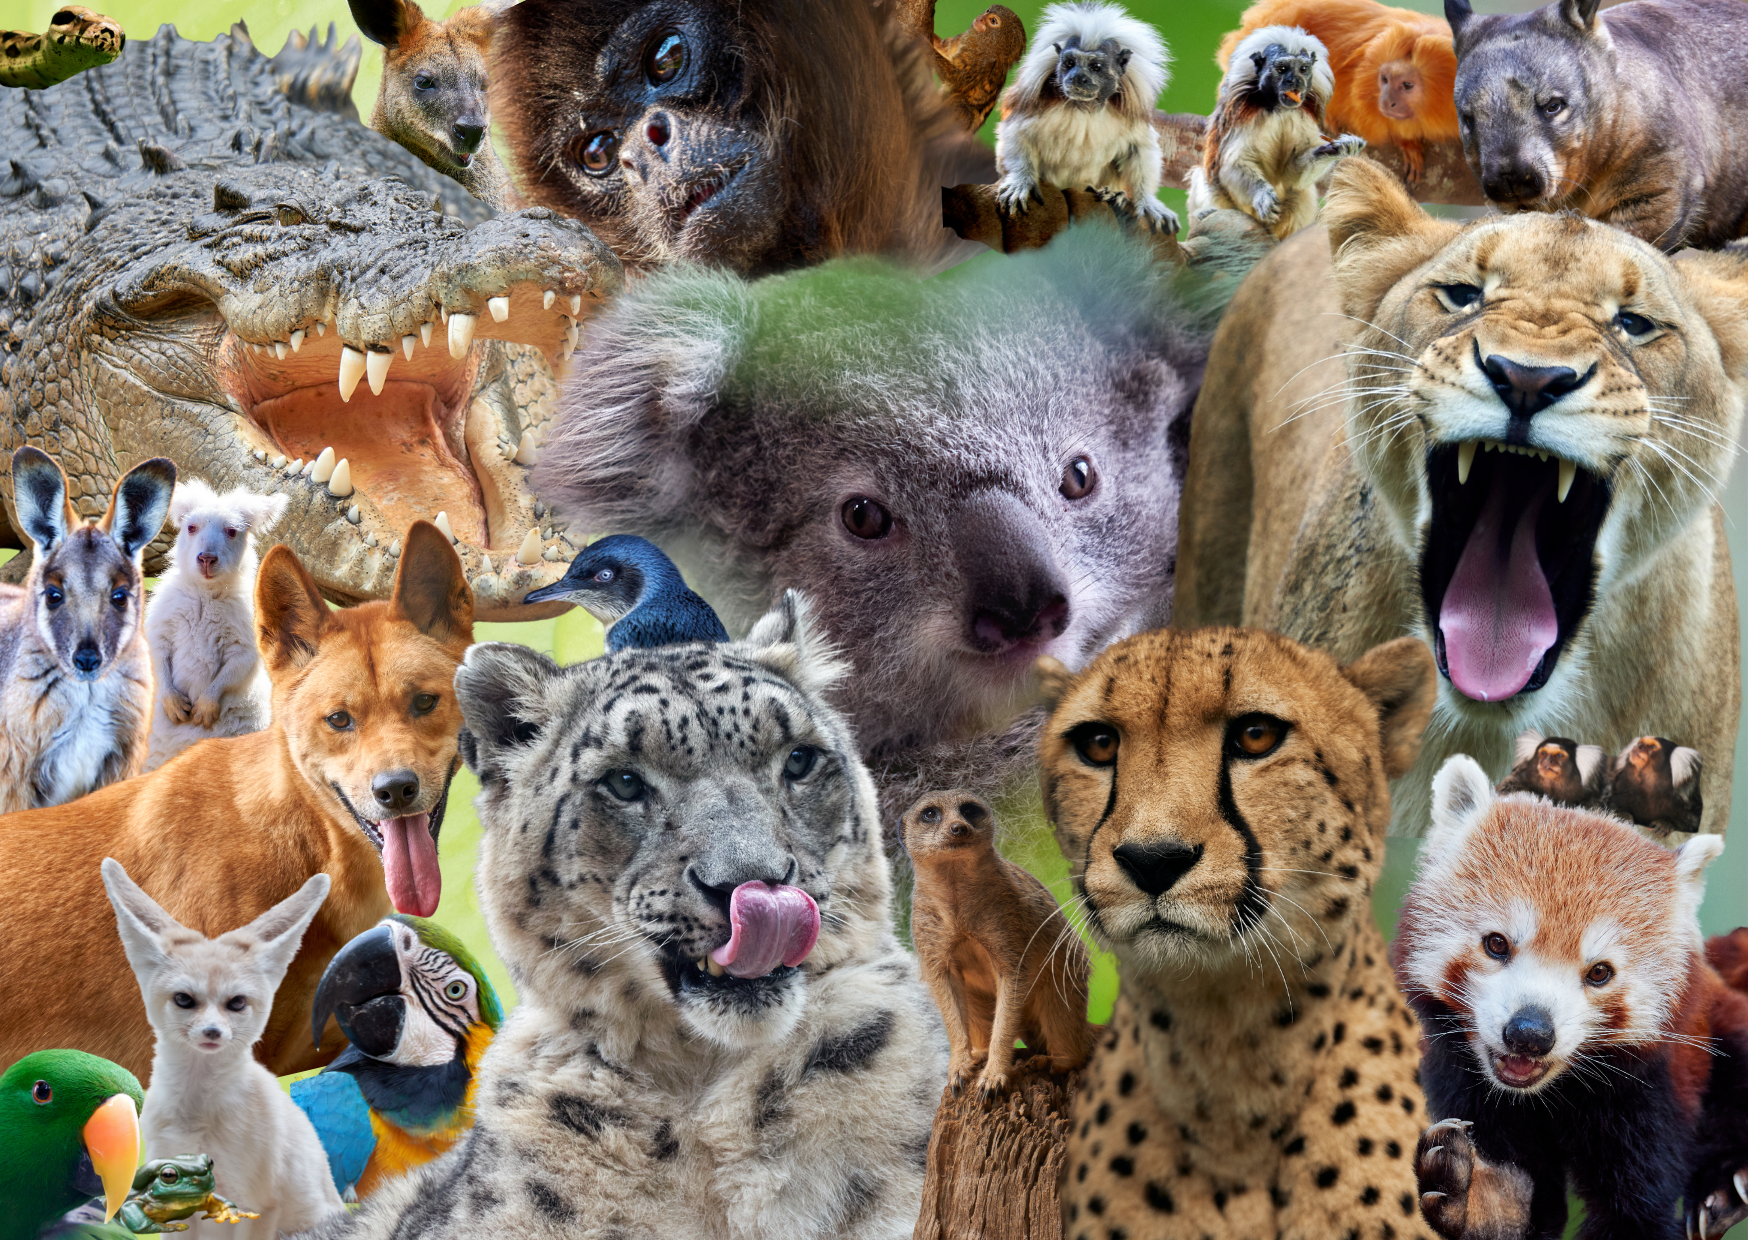 Over 80 species of animals to meet